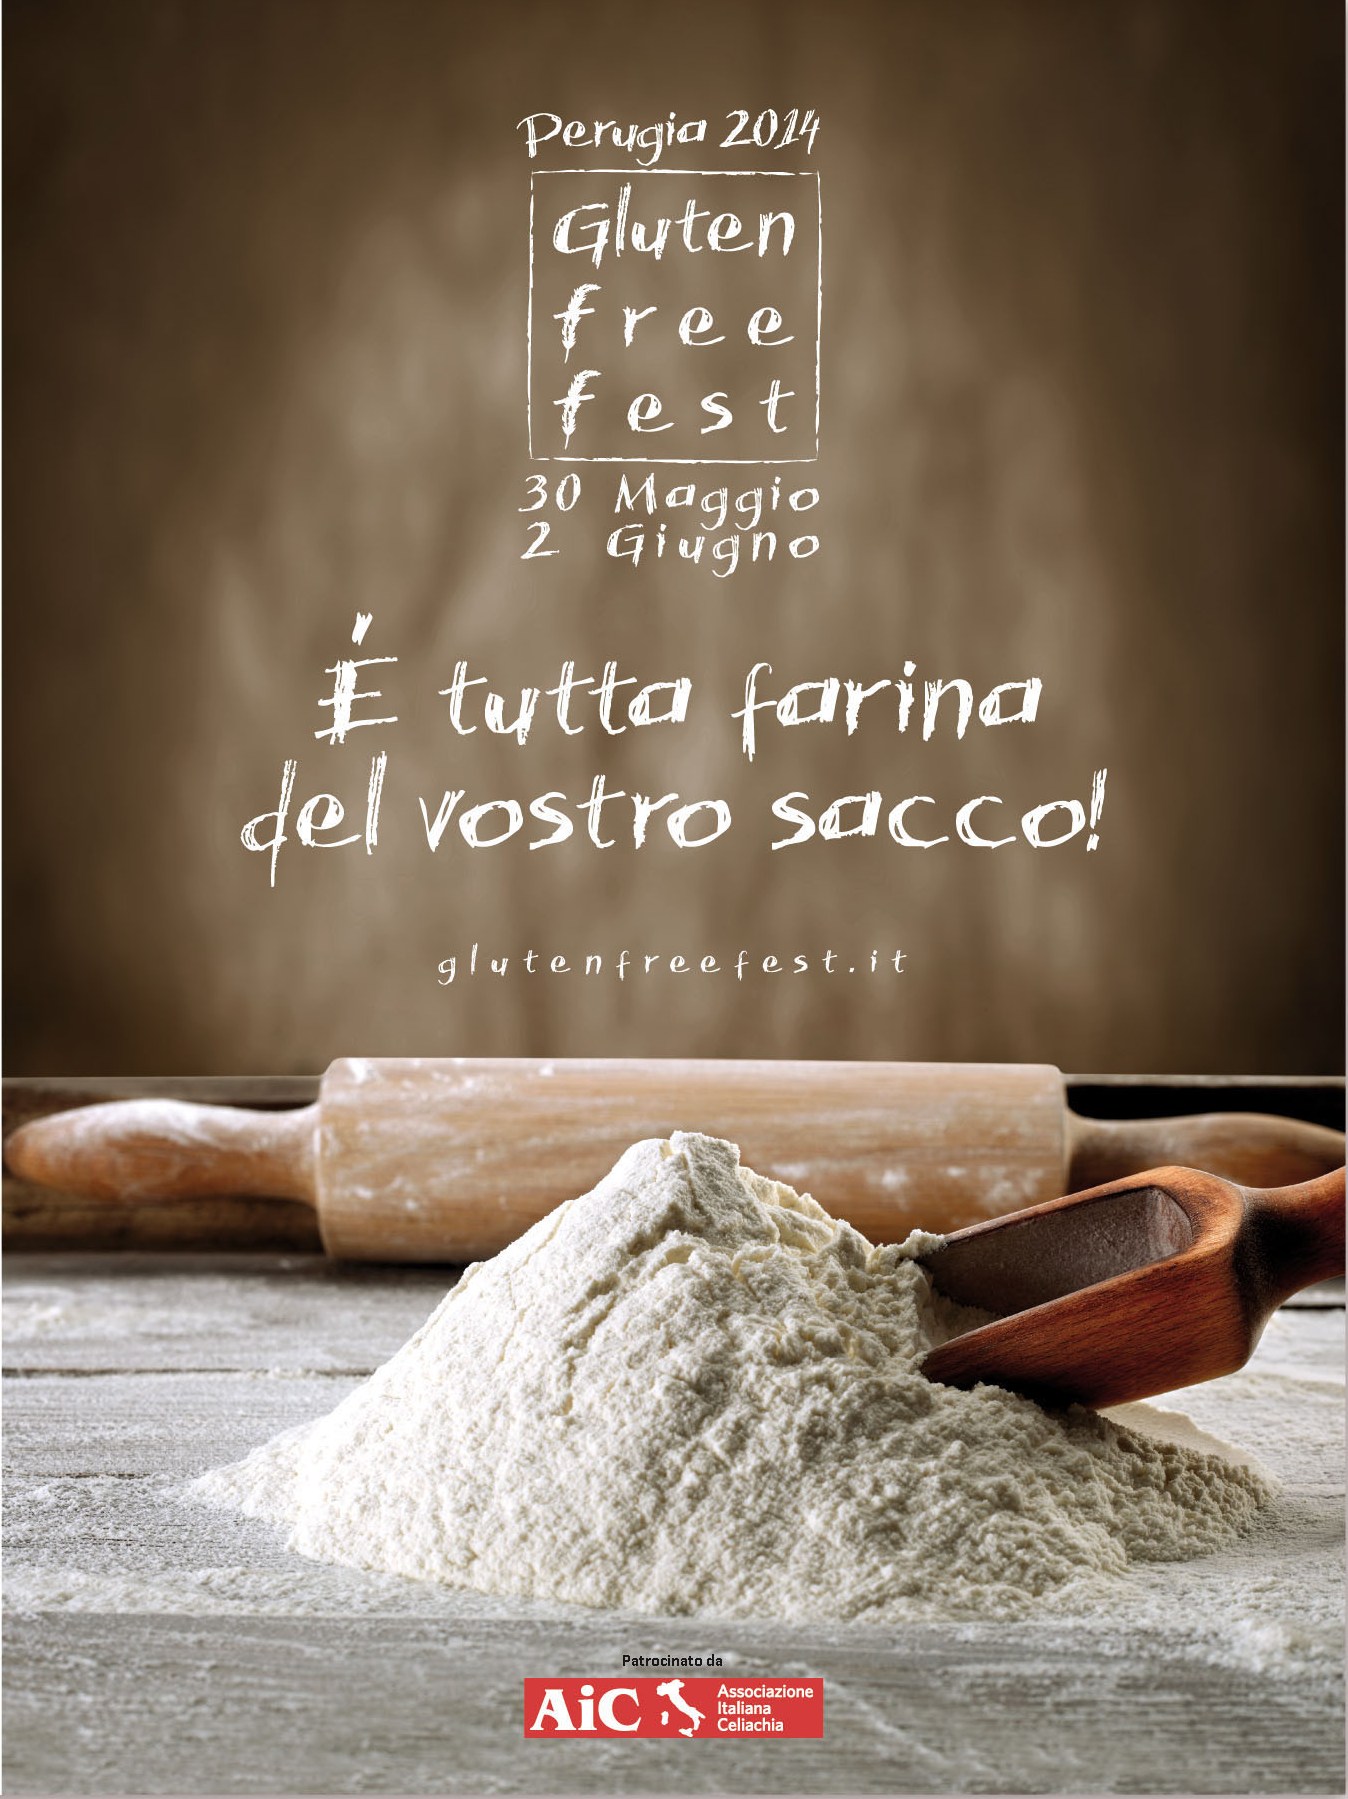 Celiachia, a Perugia il gluten free fest dal 30 maggio al 2 giugno 2014